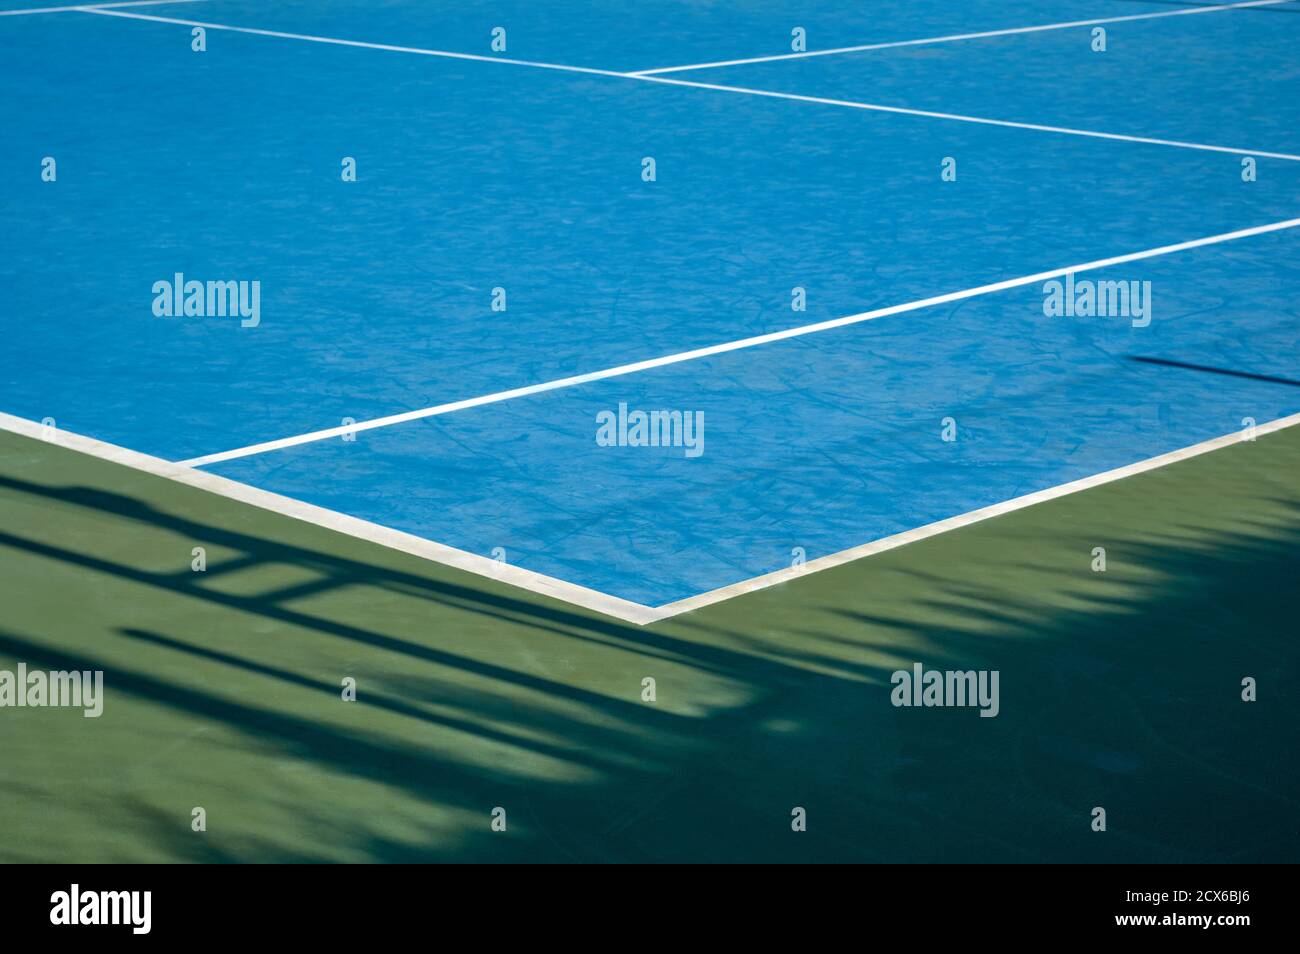 détail d'une vue à partir d'un angle d'une matière synthétique court de tennis bleu avec lignes blanches Banque D'Images